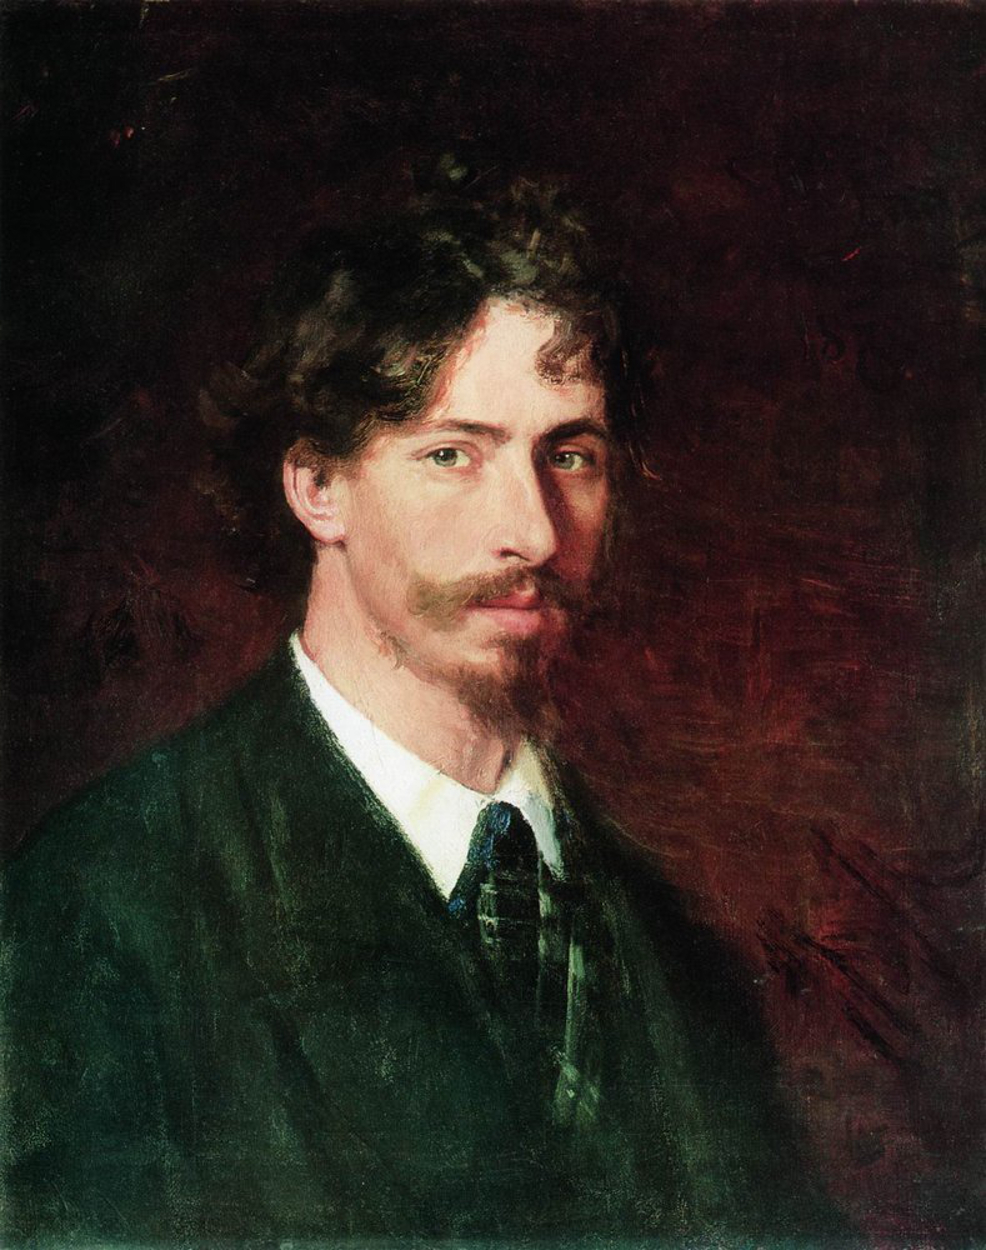 Ilya Repin - 5. August 1844 - 29. September 1930